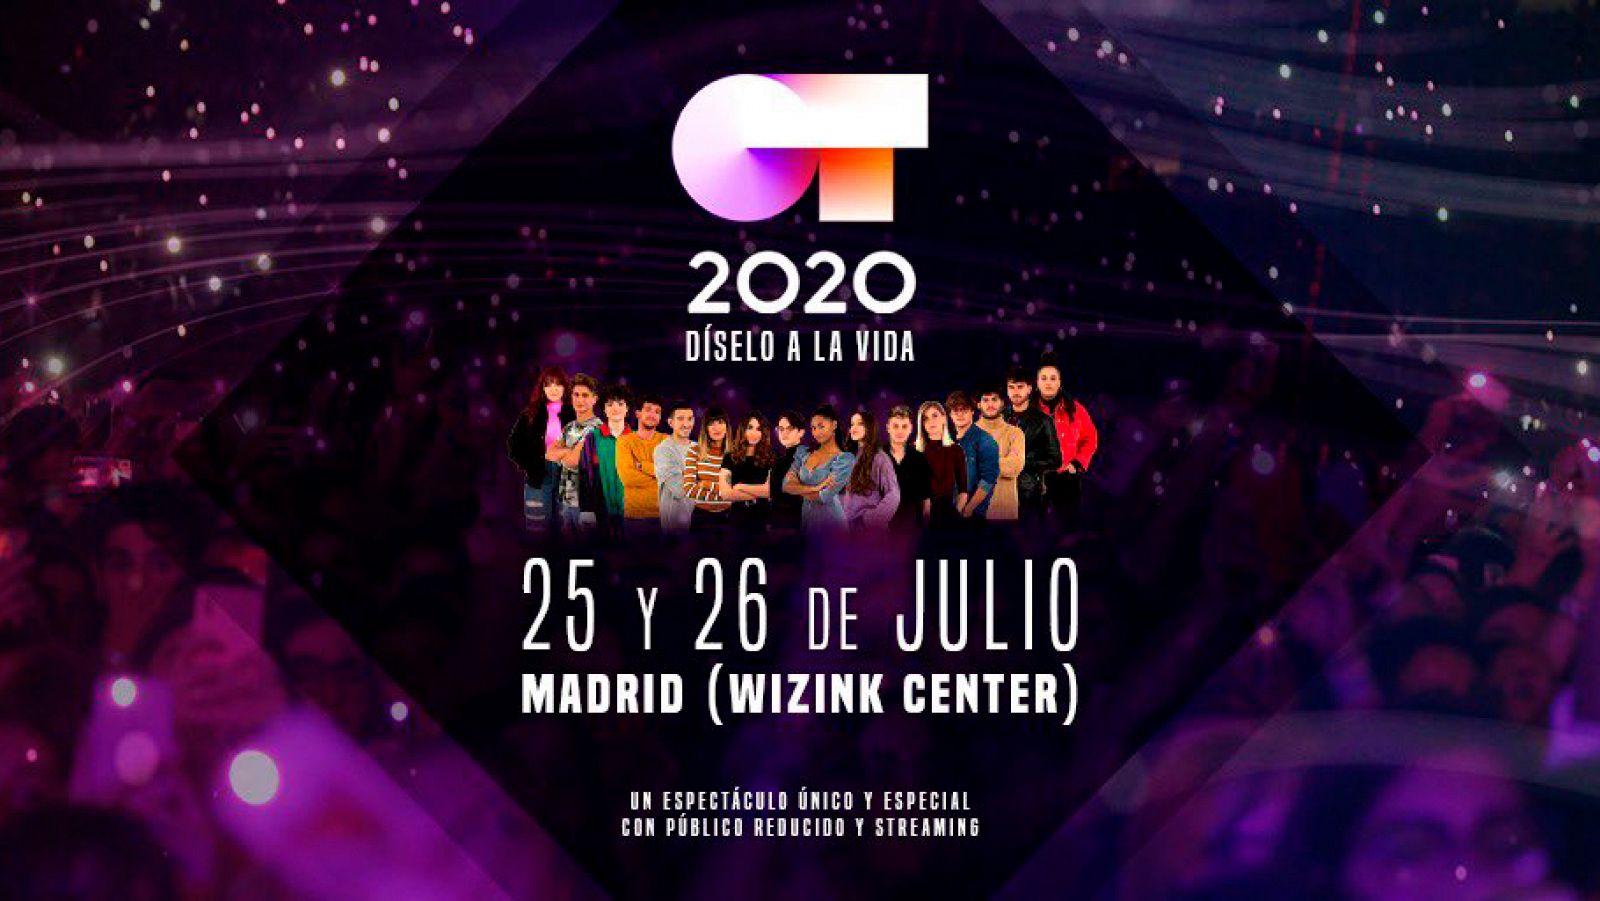 OT 2020 dará dos conciertos en julio en Madrid